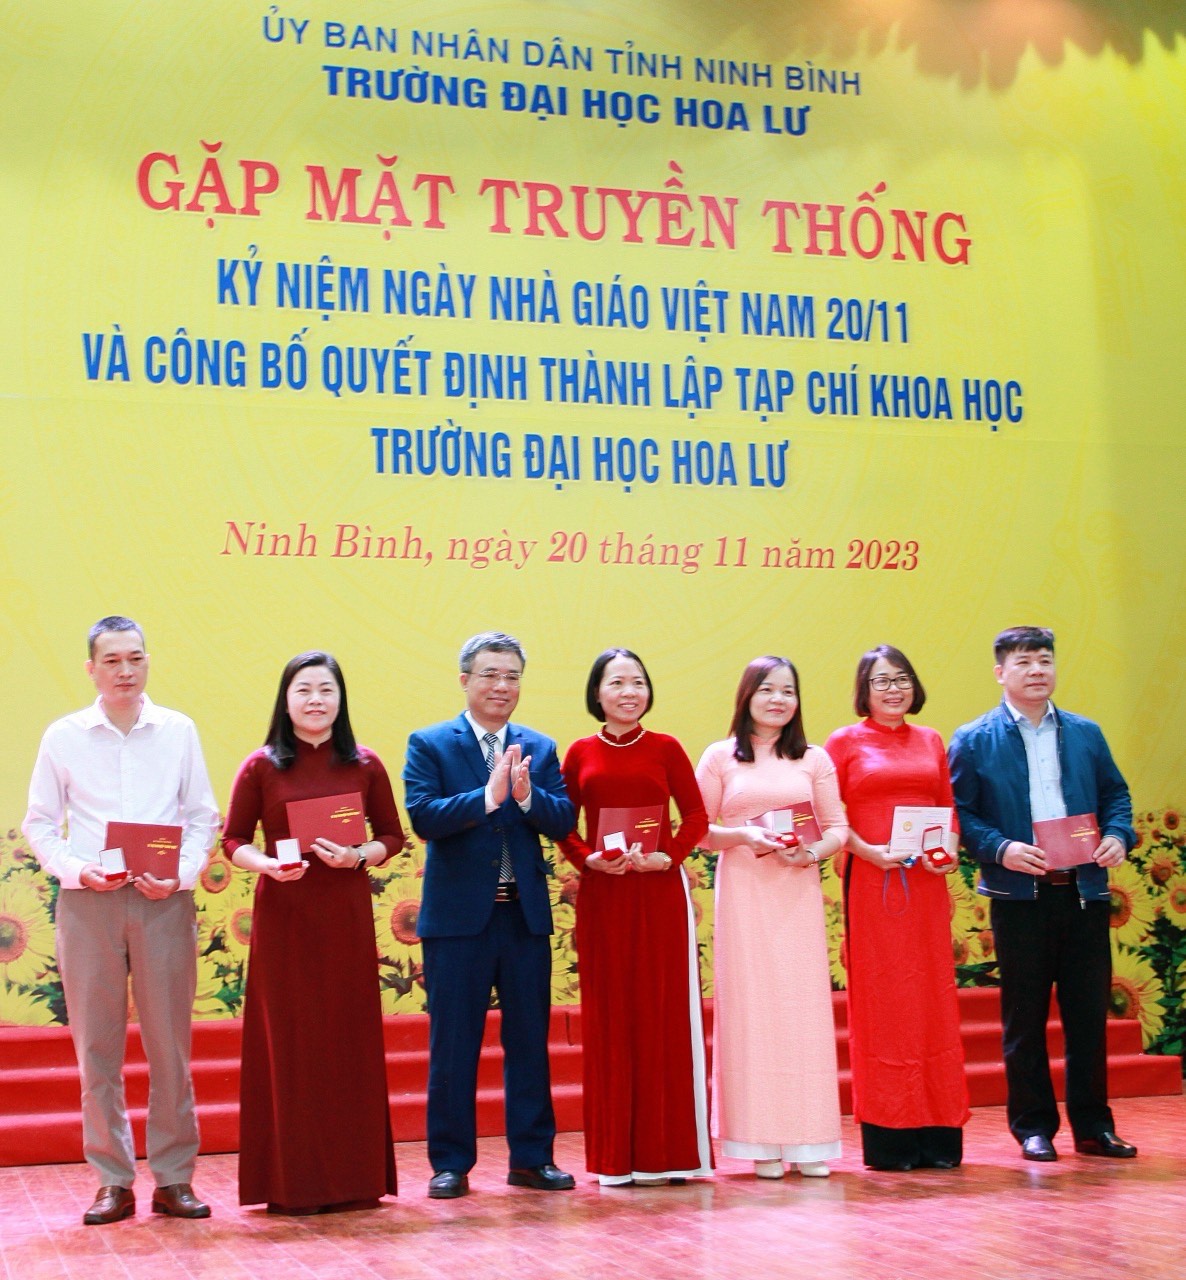 Gặp mặt truyền thống nhân kỷ niệm ngày Nhà giáo Việt Nam 20/11 và công bố Quyết định thành lập Tạp chí Khoa học Trường Đại học Hoa Lư